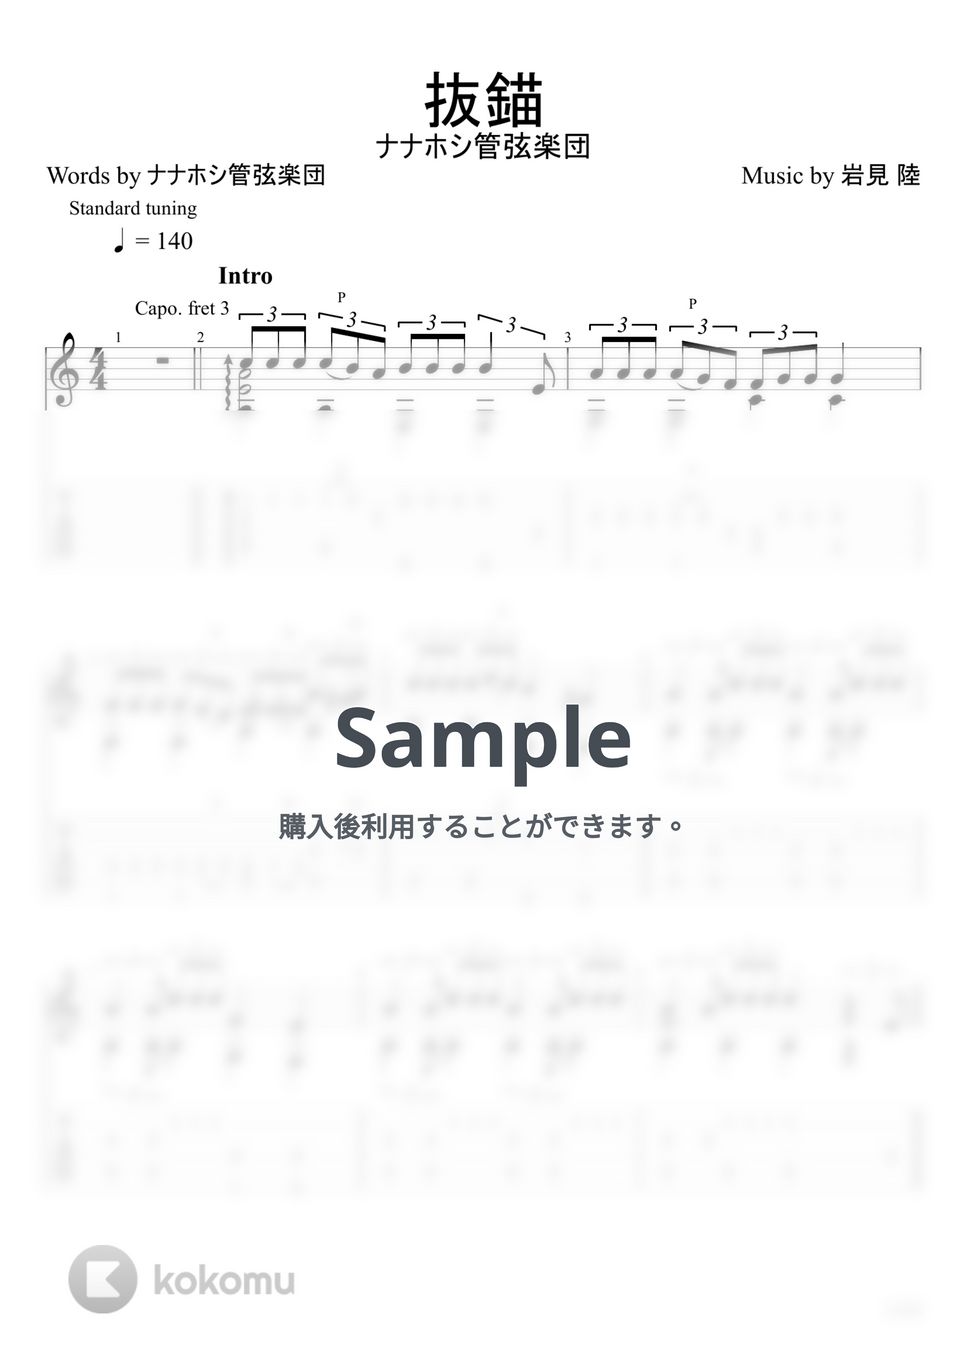 ナナホシ管弦楽団 - 抜錨 (ソロギター) by u3danchou